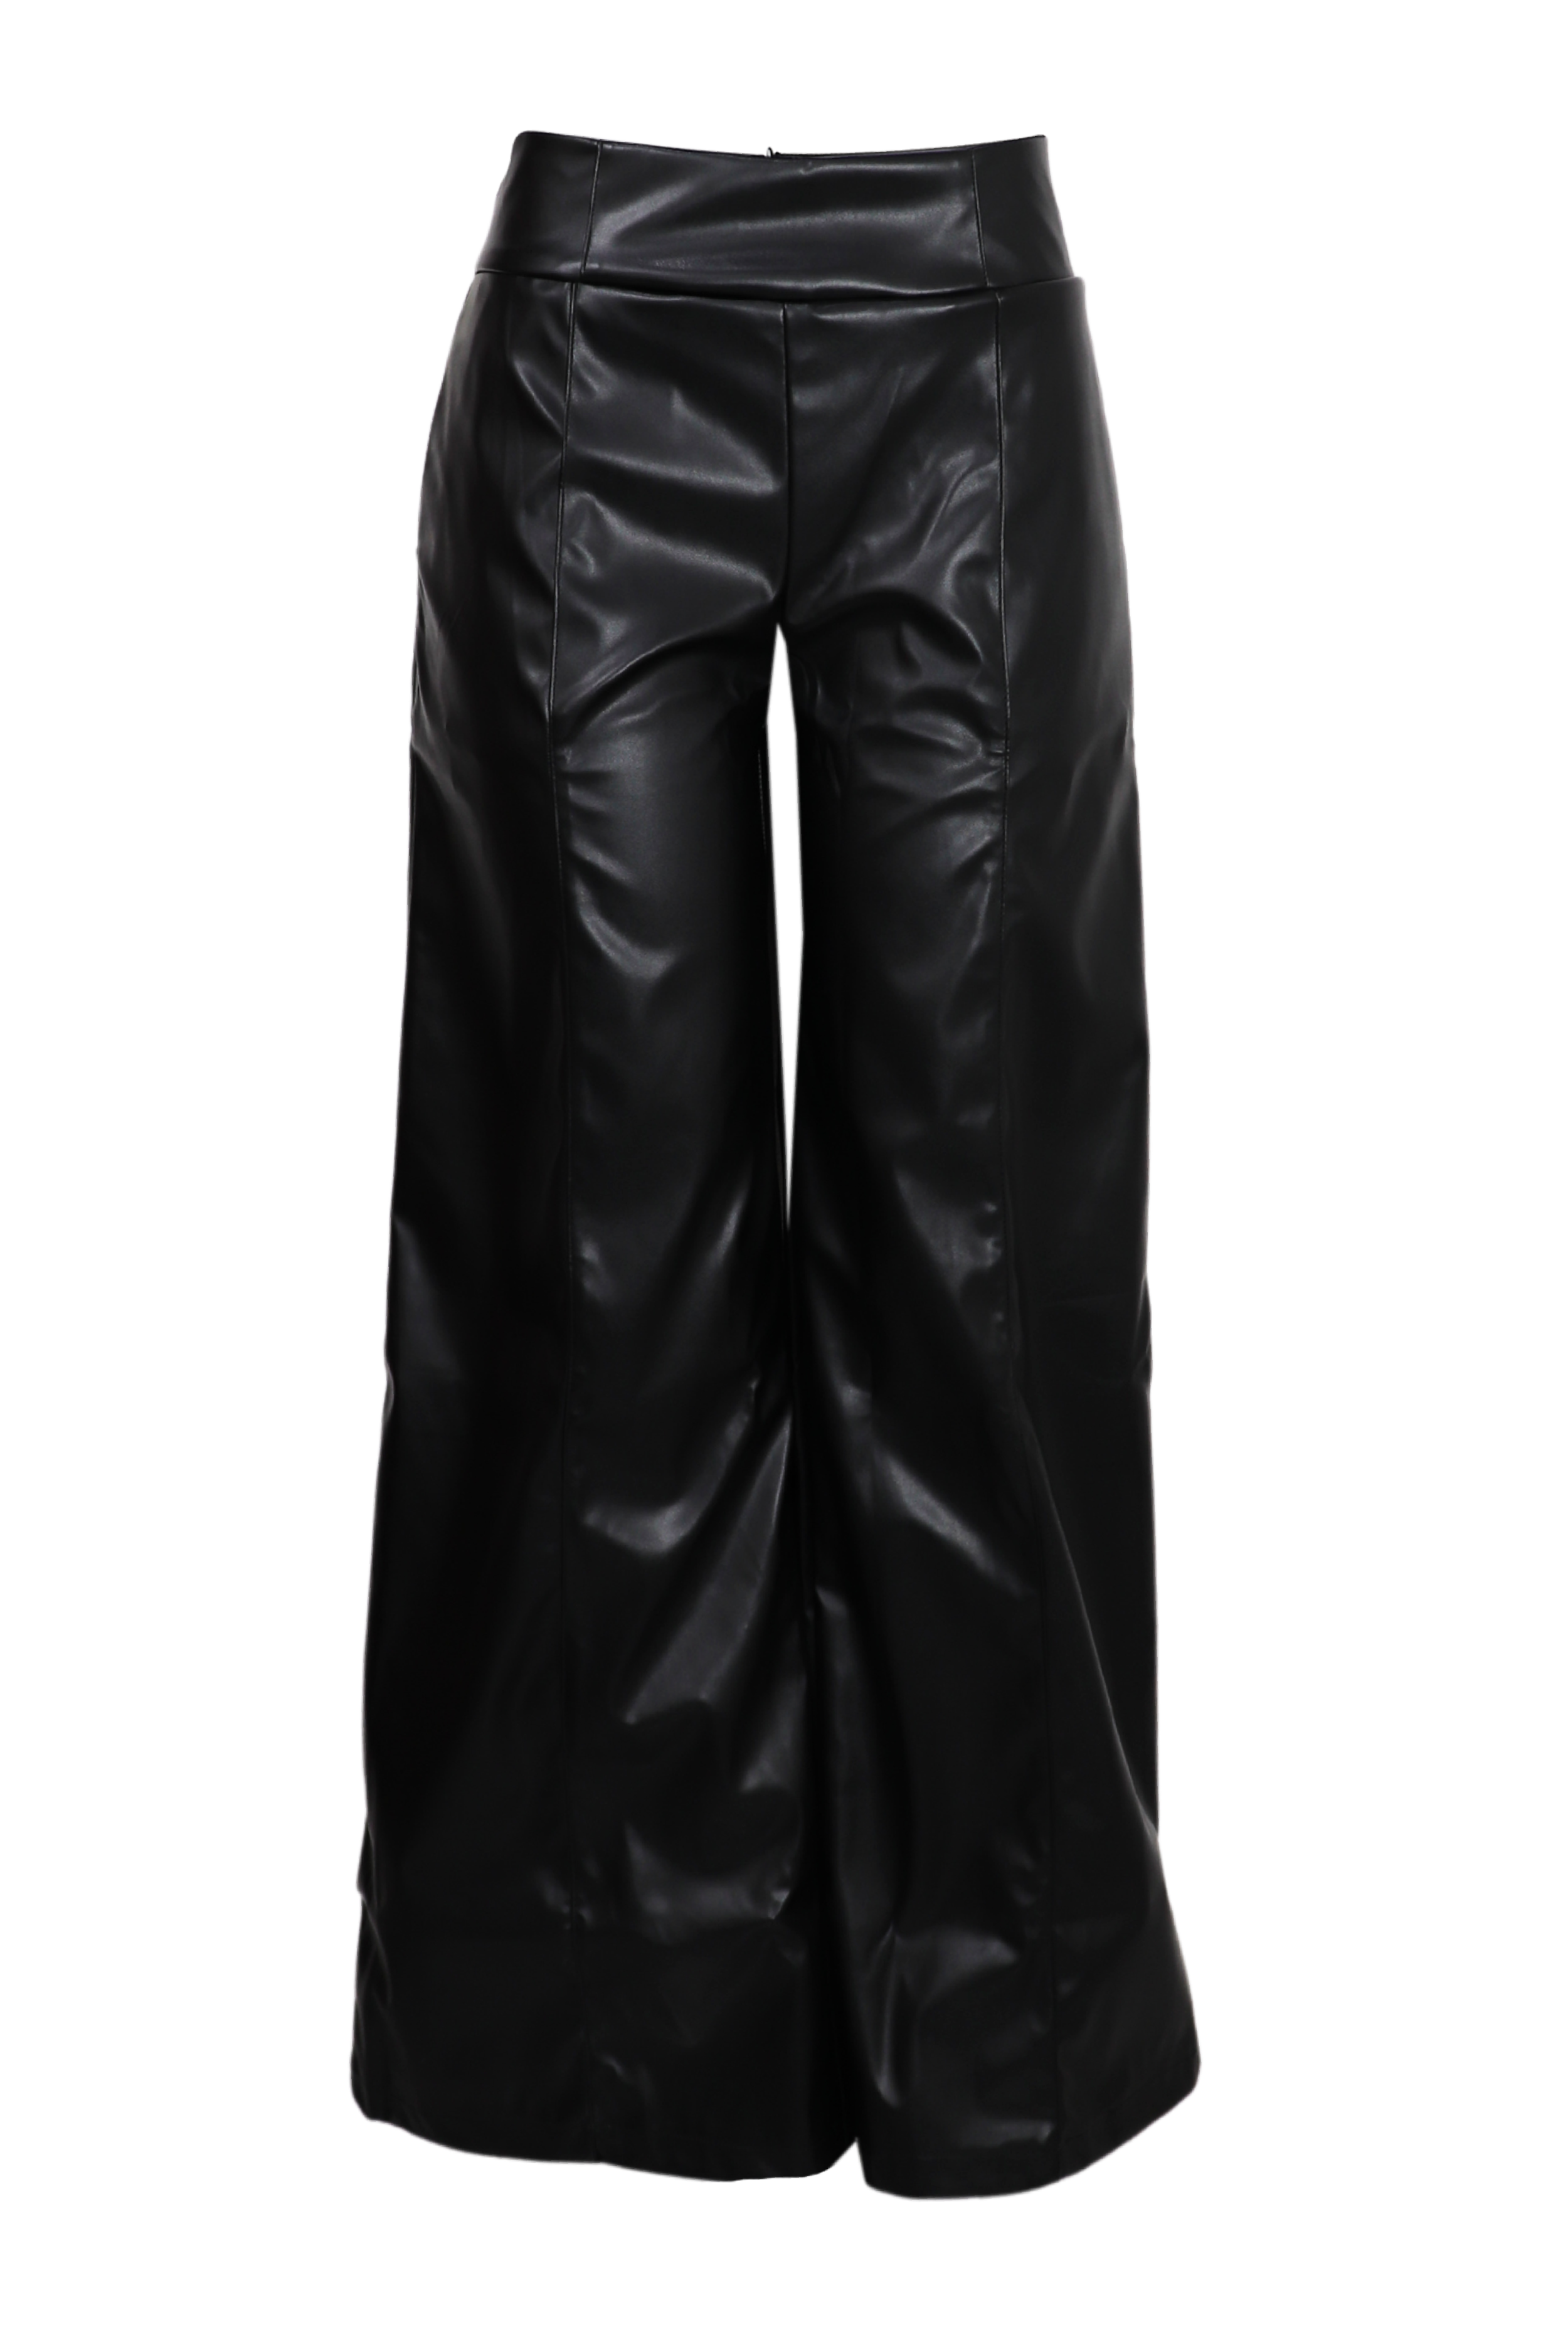 Pantalon bota recta con efecto metalizado color negro